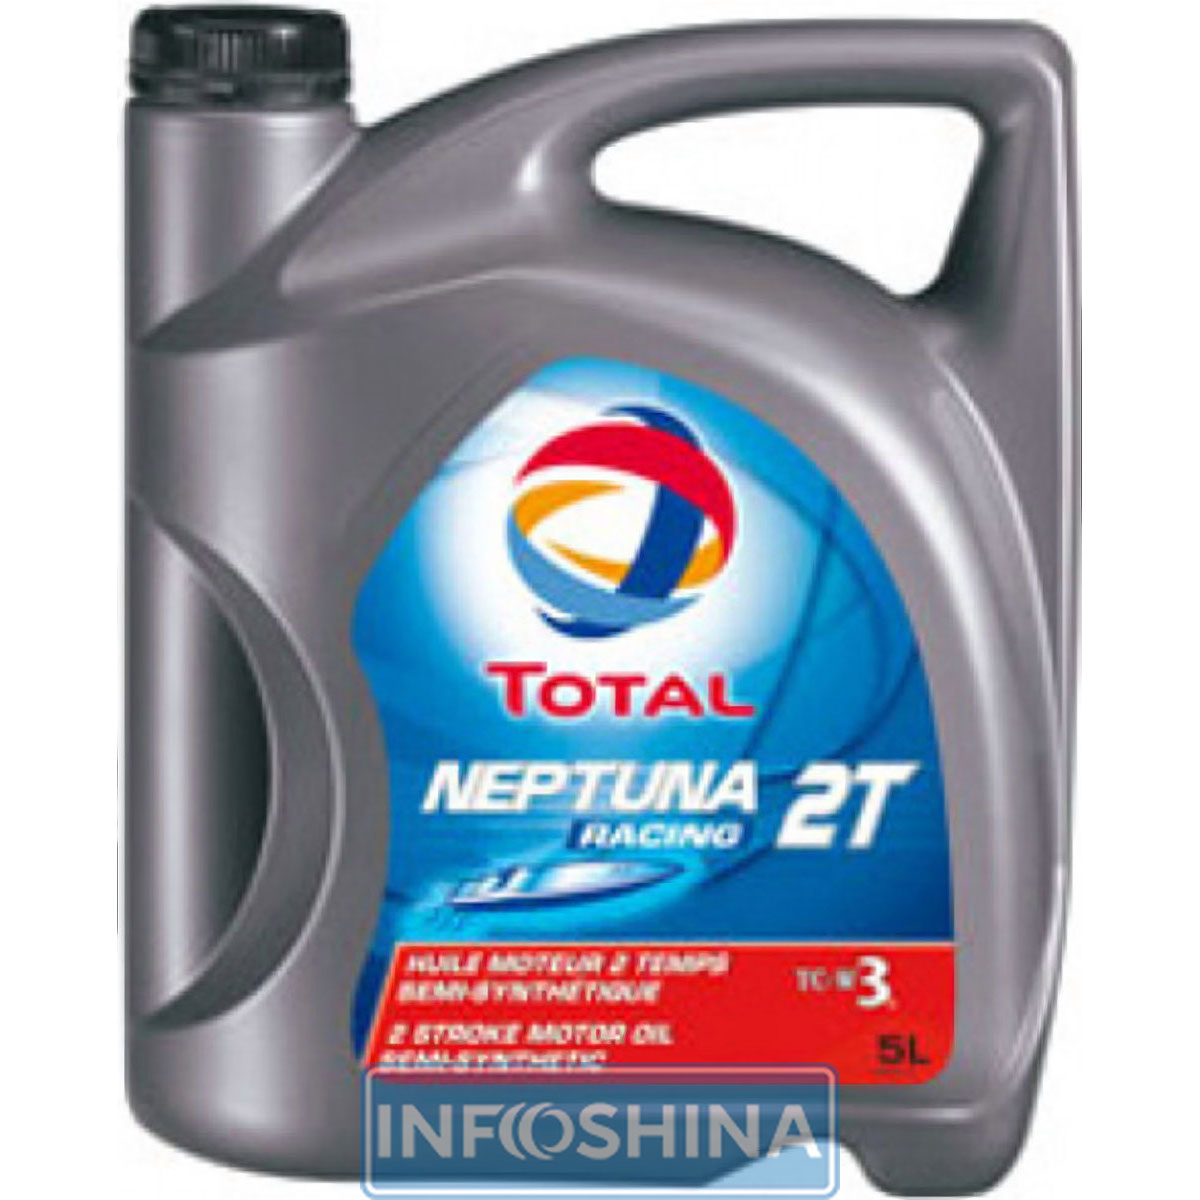 Total Neptuna 2T Racing